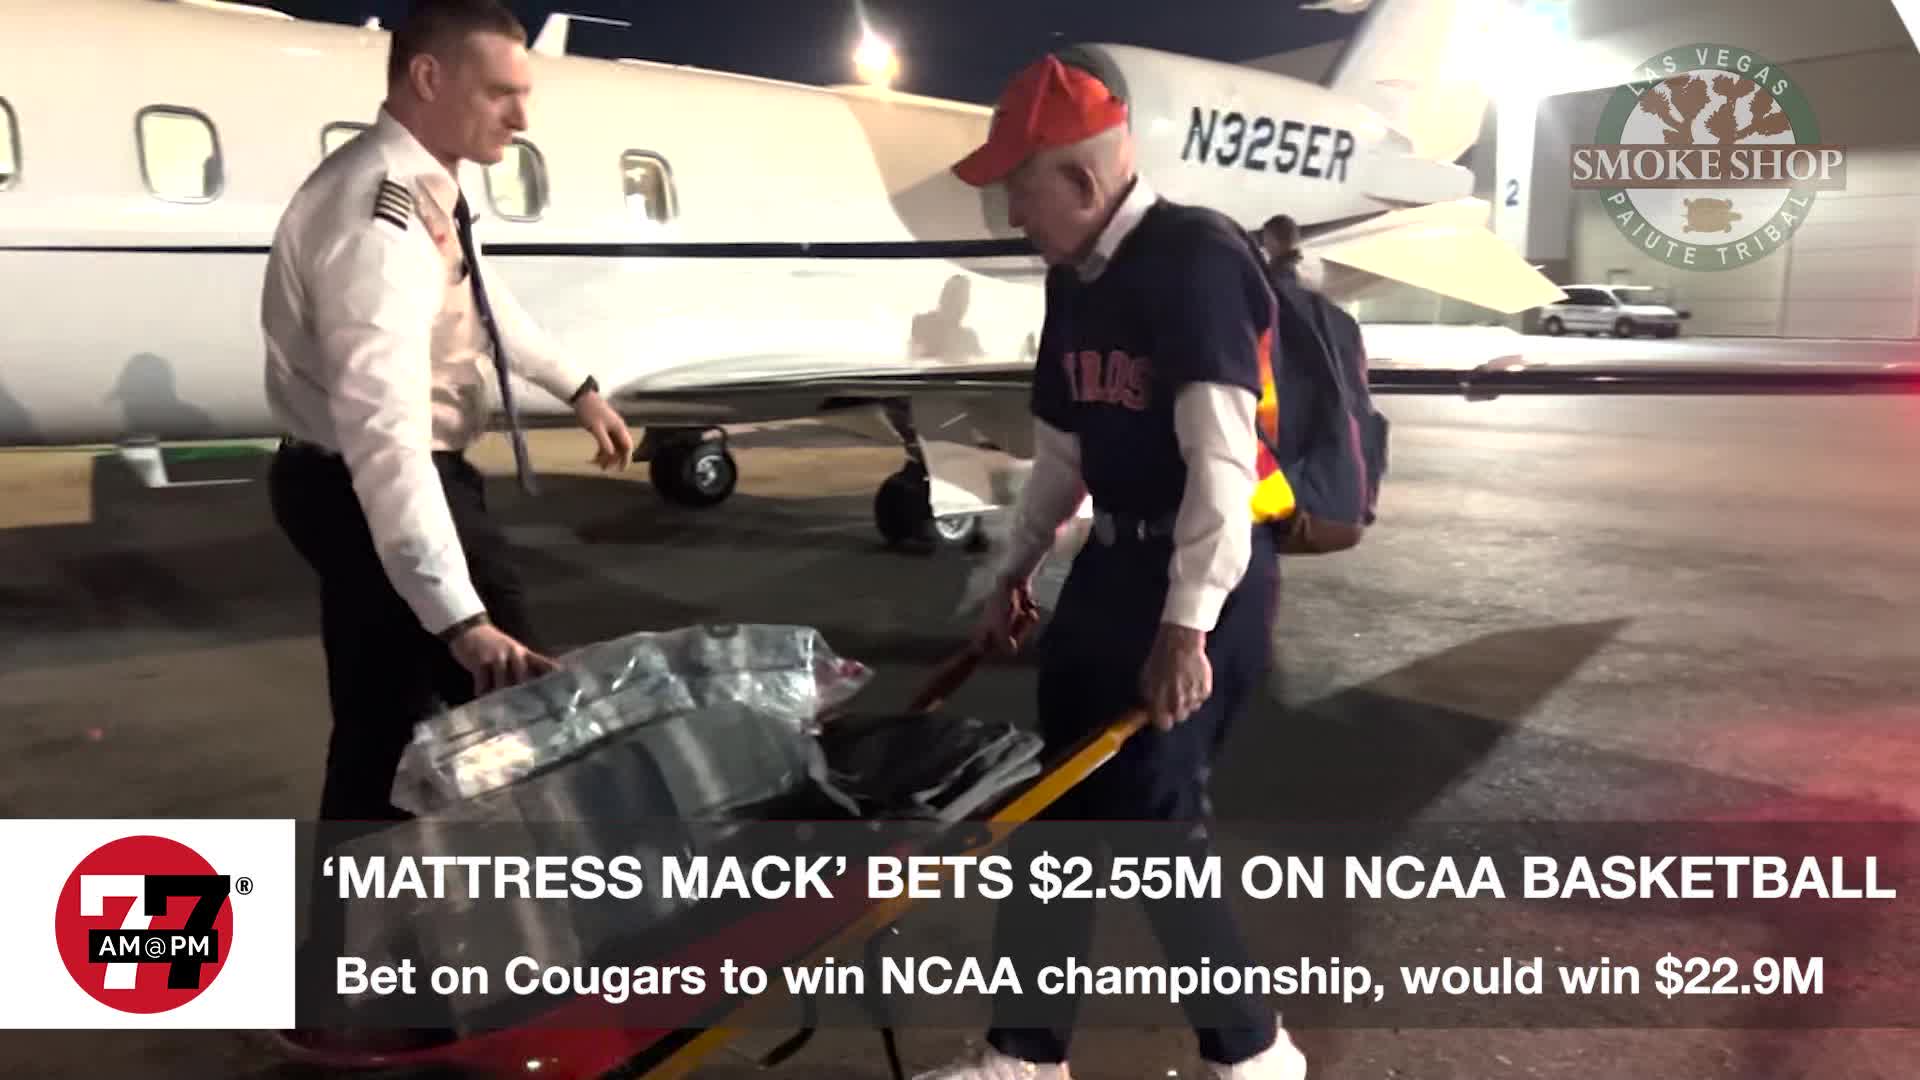 Mattress Mack bets $2.55M on NCAA basketball championship